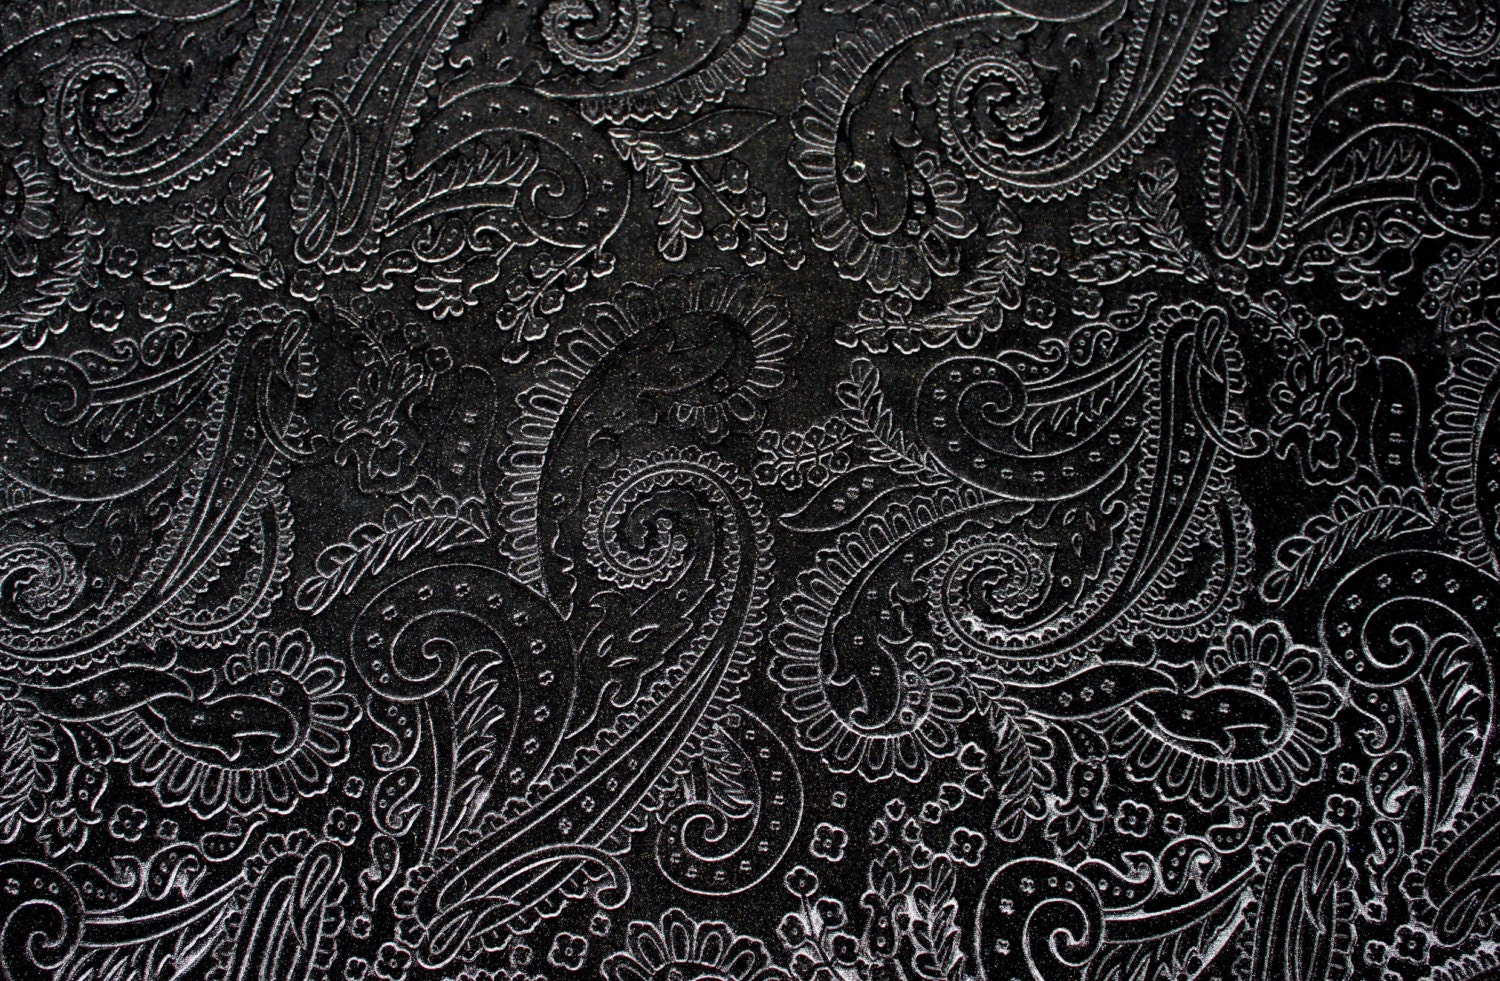 Black Paisley Design Velvet Fabric Fat Quarter from KBazaar on Etsy Studio